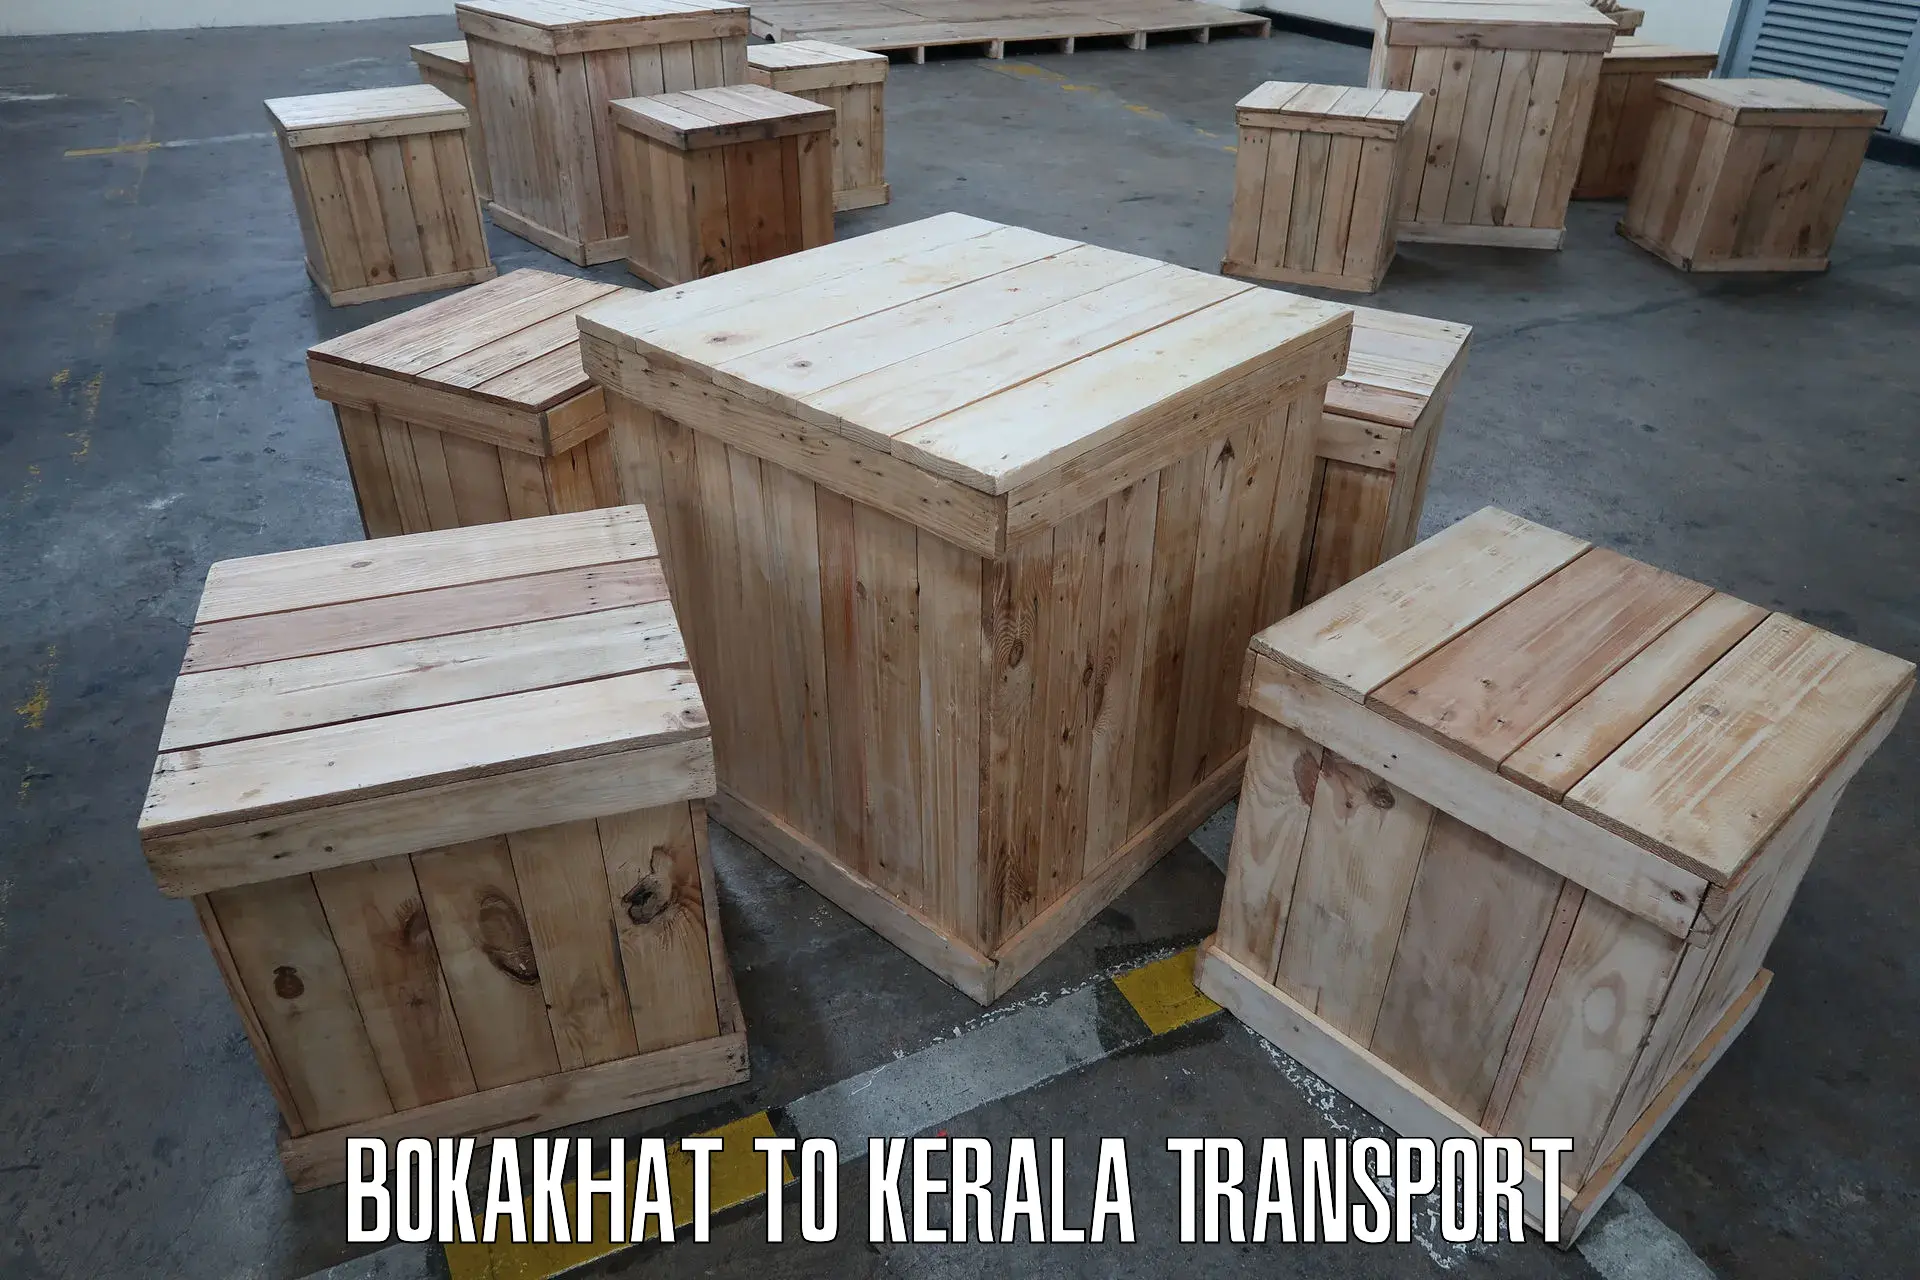 Nearest transport service Bokakhat to Calicut